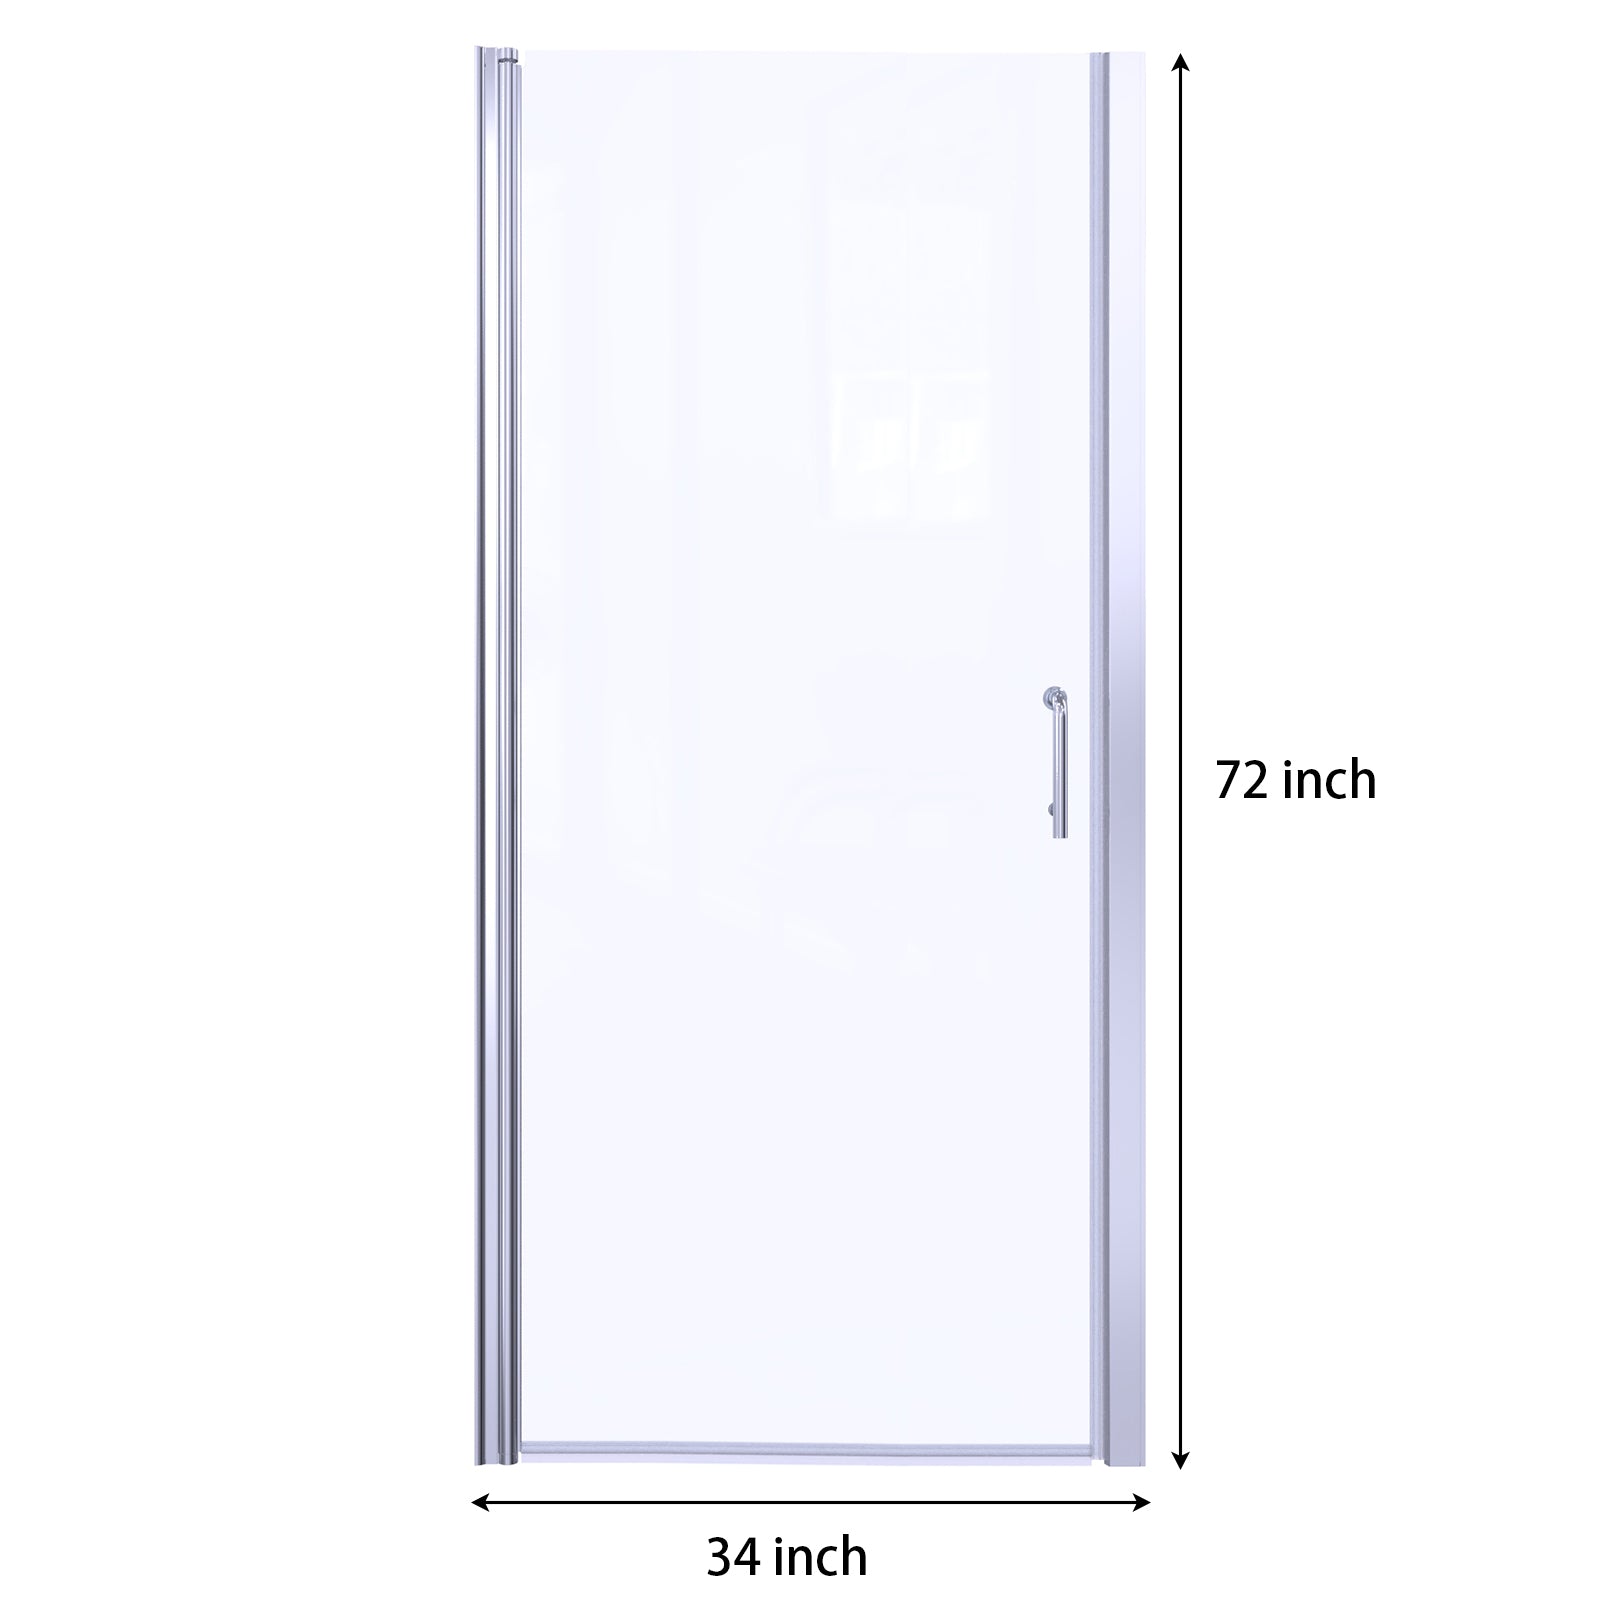 Standard Shower Door Size